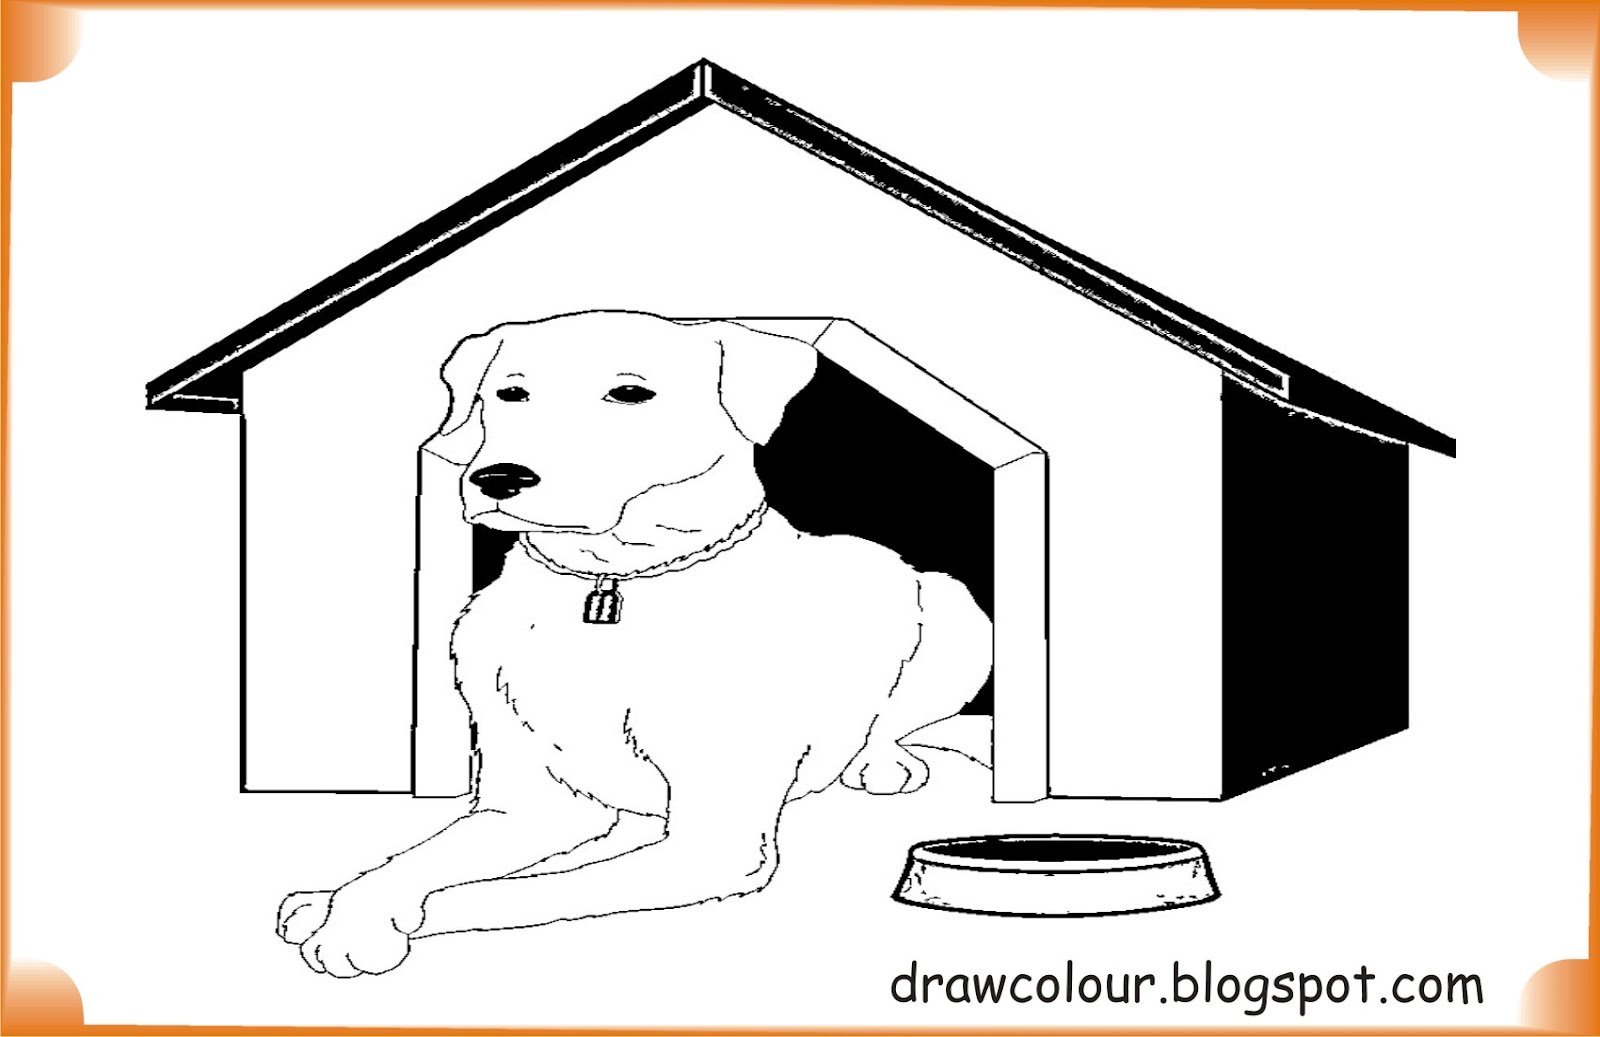 Animals house перевод. Жилище собаки картинки для детей. Dogs House Coloring. Dog in the House Clipart черно-белая. Рисунок на конкурс хвостик дог Хаус для детей.